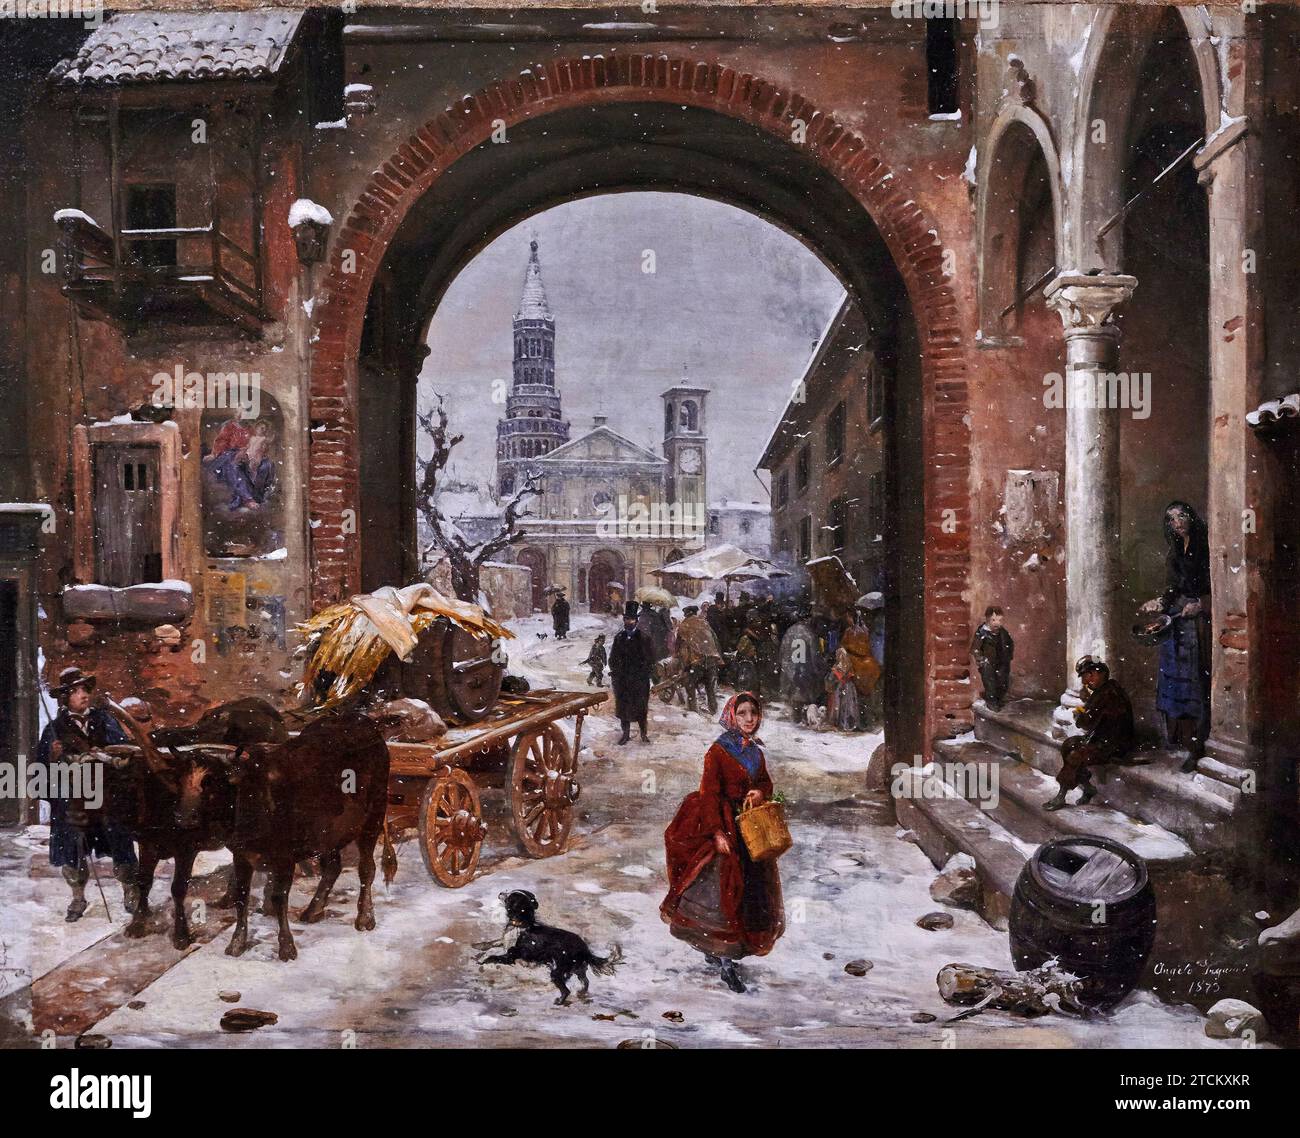 Mercato invernale di fronte all'Abbazia di Chiaravalle - olio su tela - Angelo Inganni - 1873 - collezione privata Foto Stock